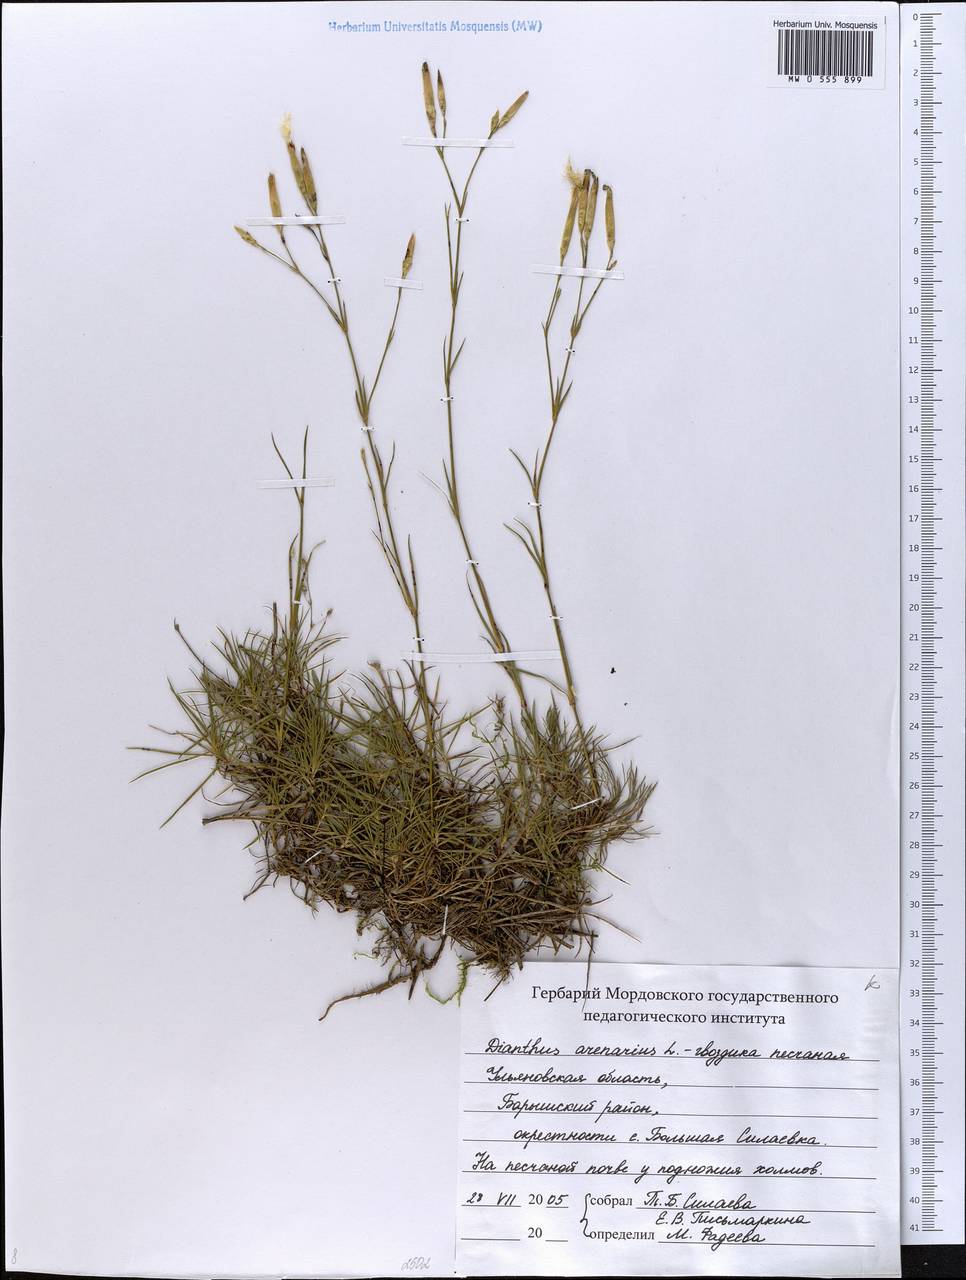 Dianthus arenarius, Eastern Europe, Middle Volga region (E8) (Russia)